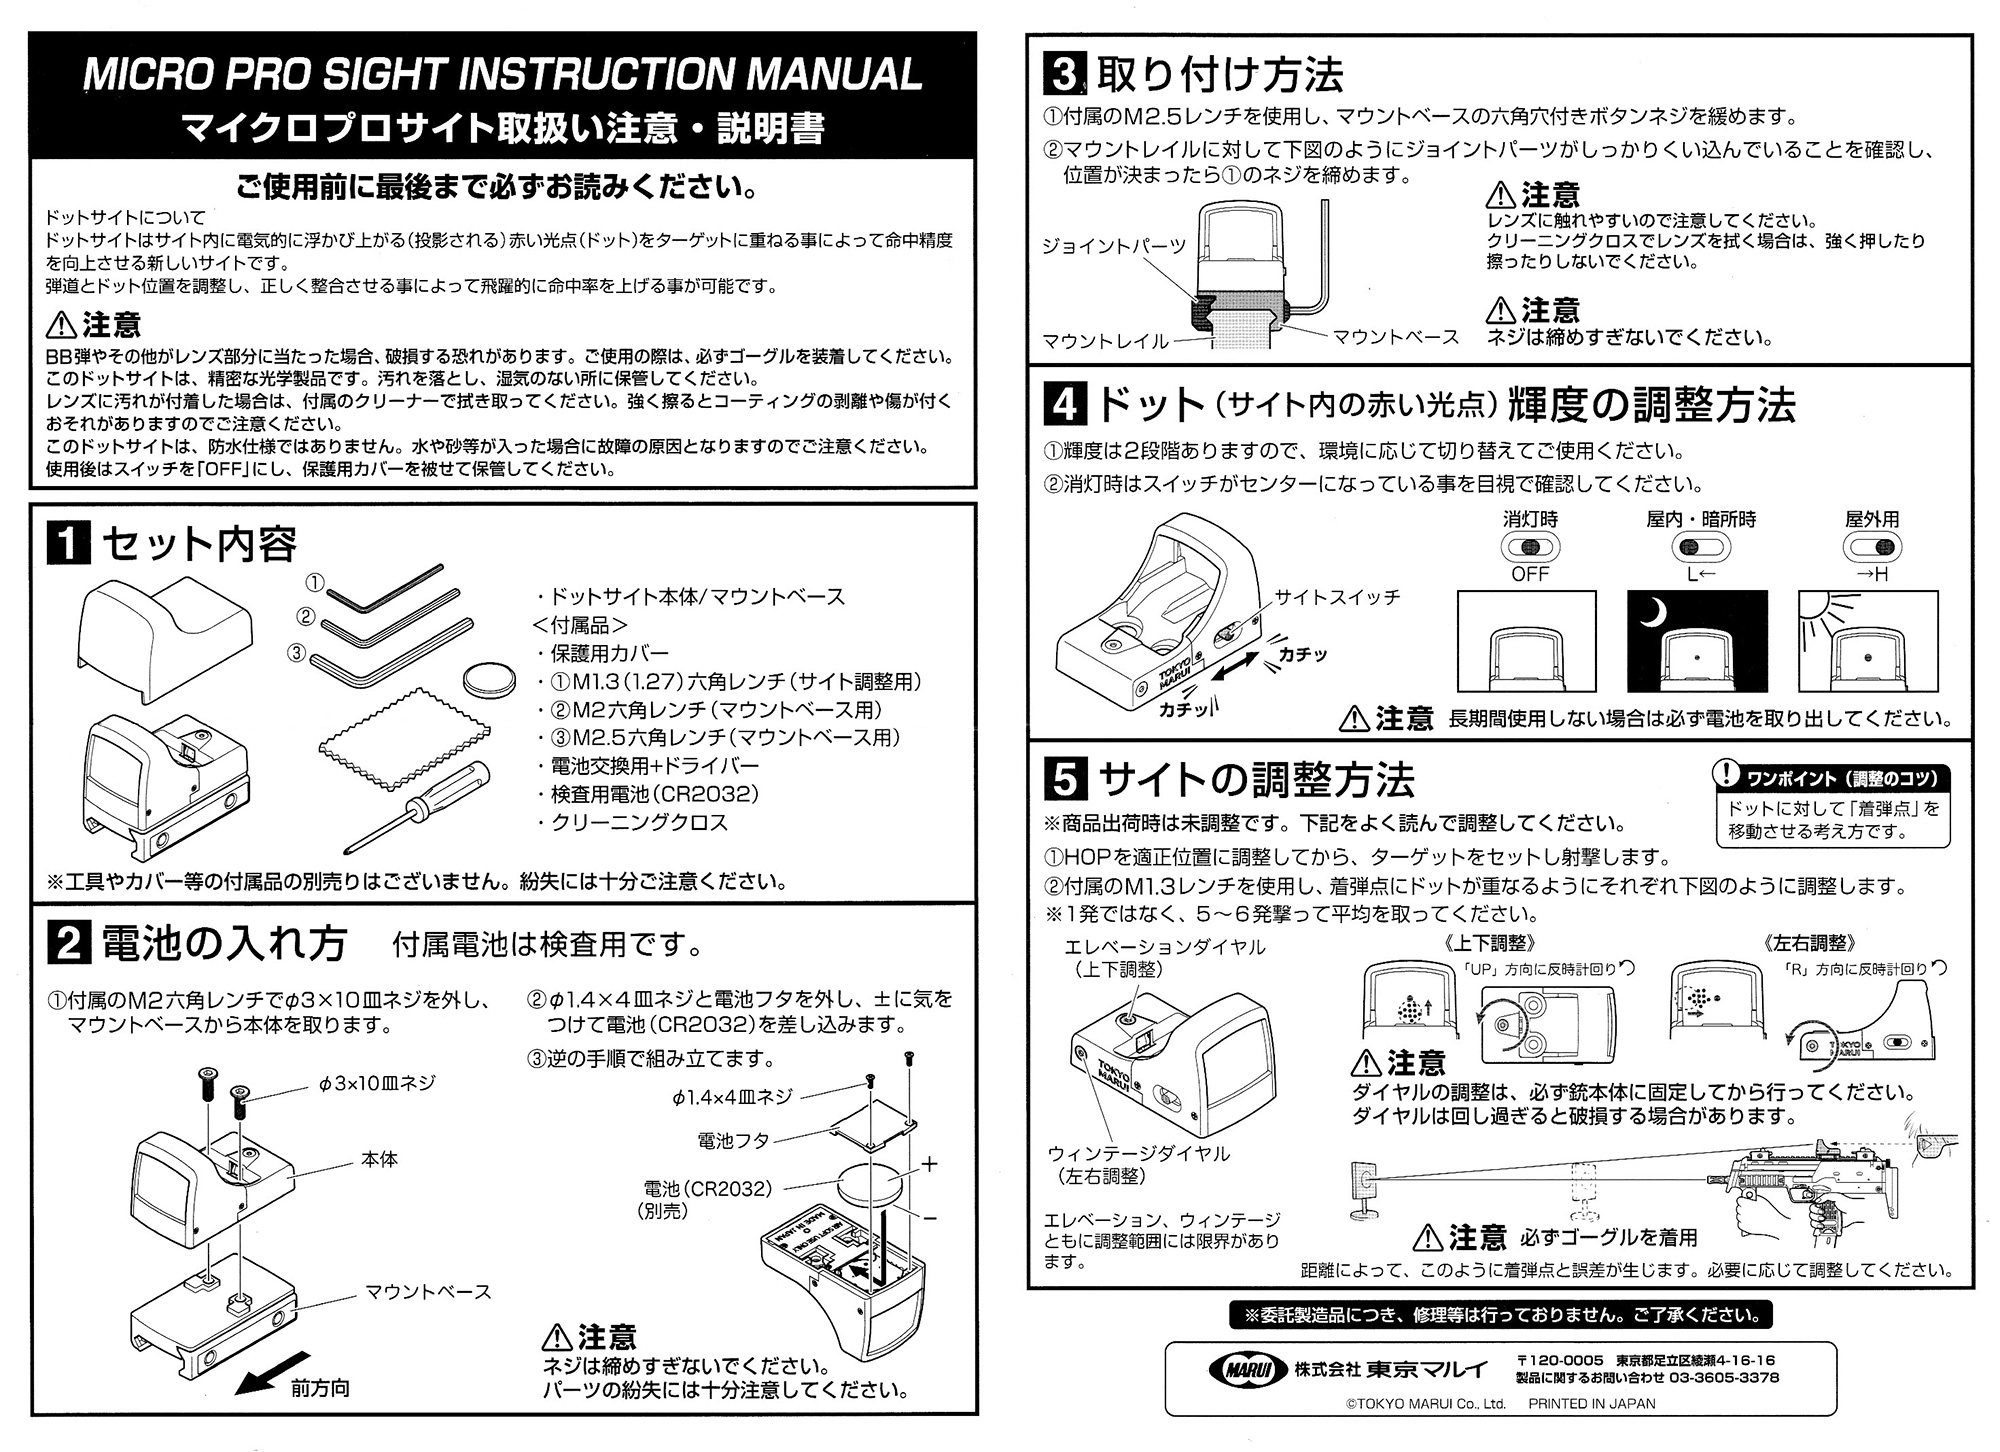 東京マルイ マイクロプロサイト ドットサイト 光学照準器 レビュー